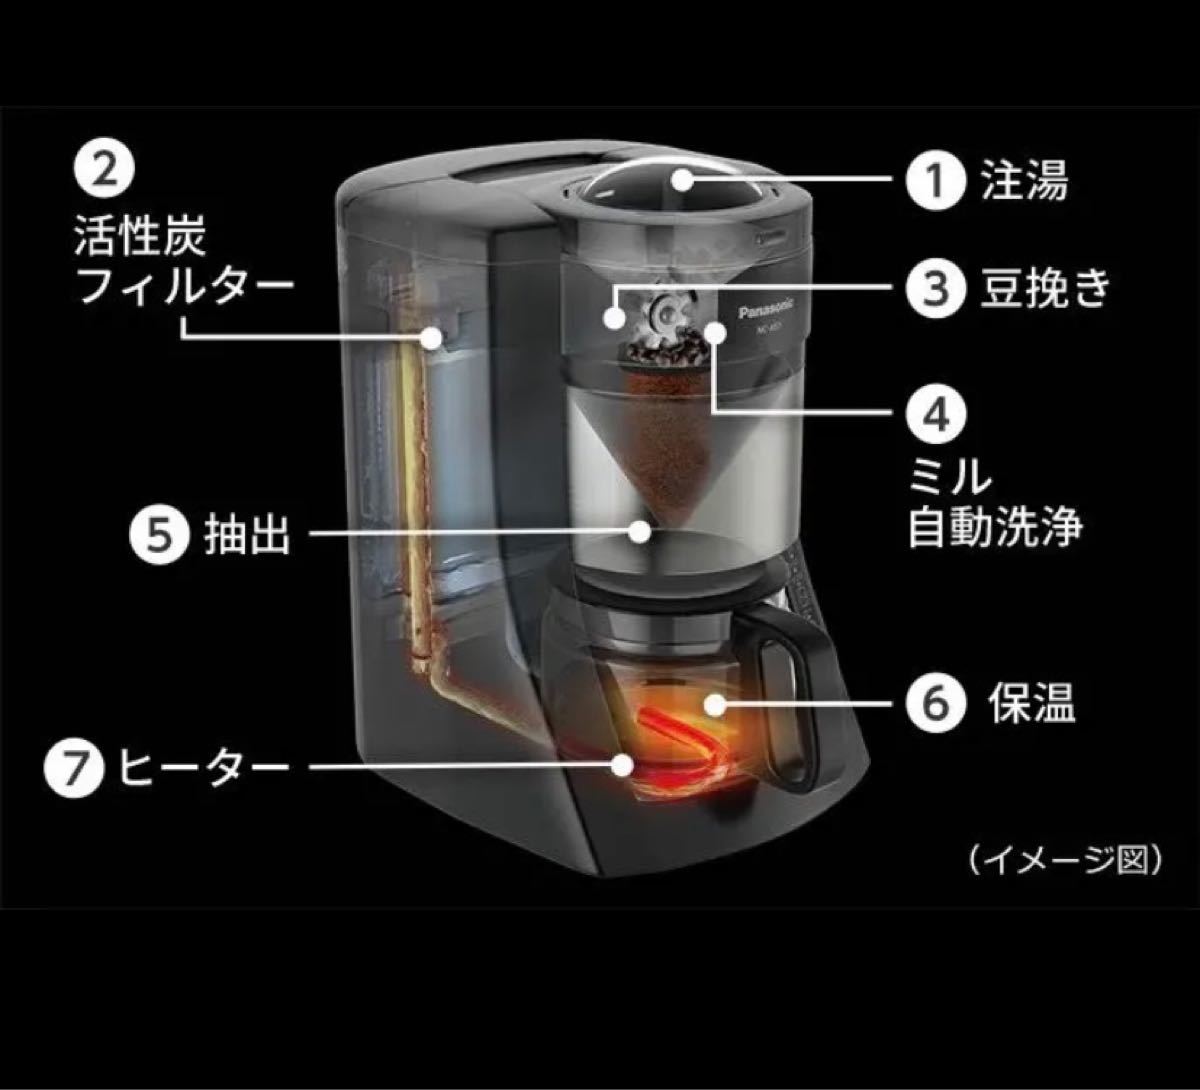 【新品未開封】Panasonic NC-A57-K 浄水コーヒーメーカー